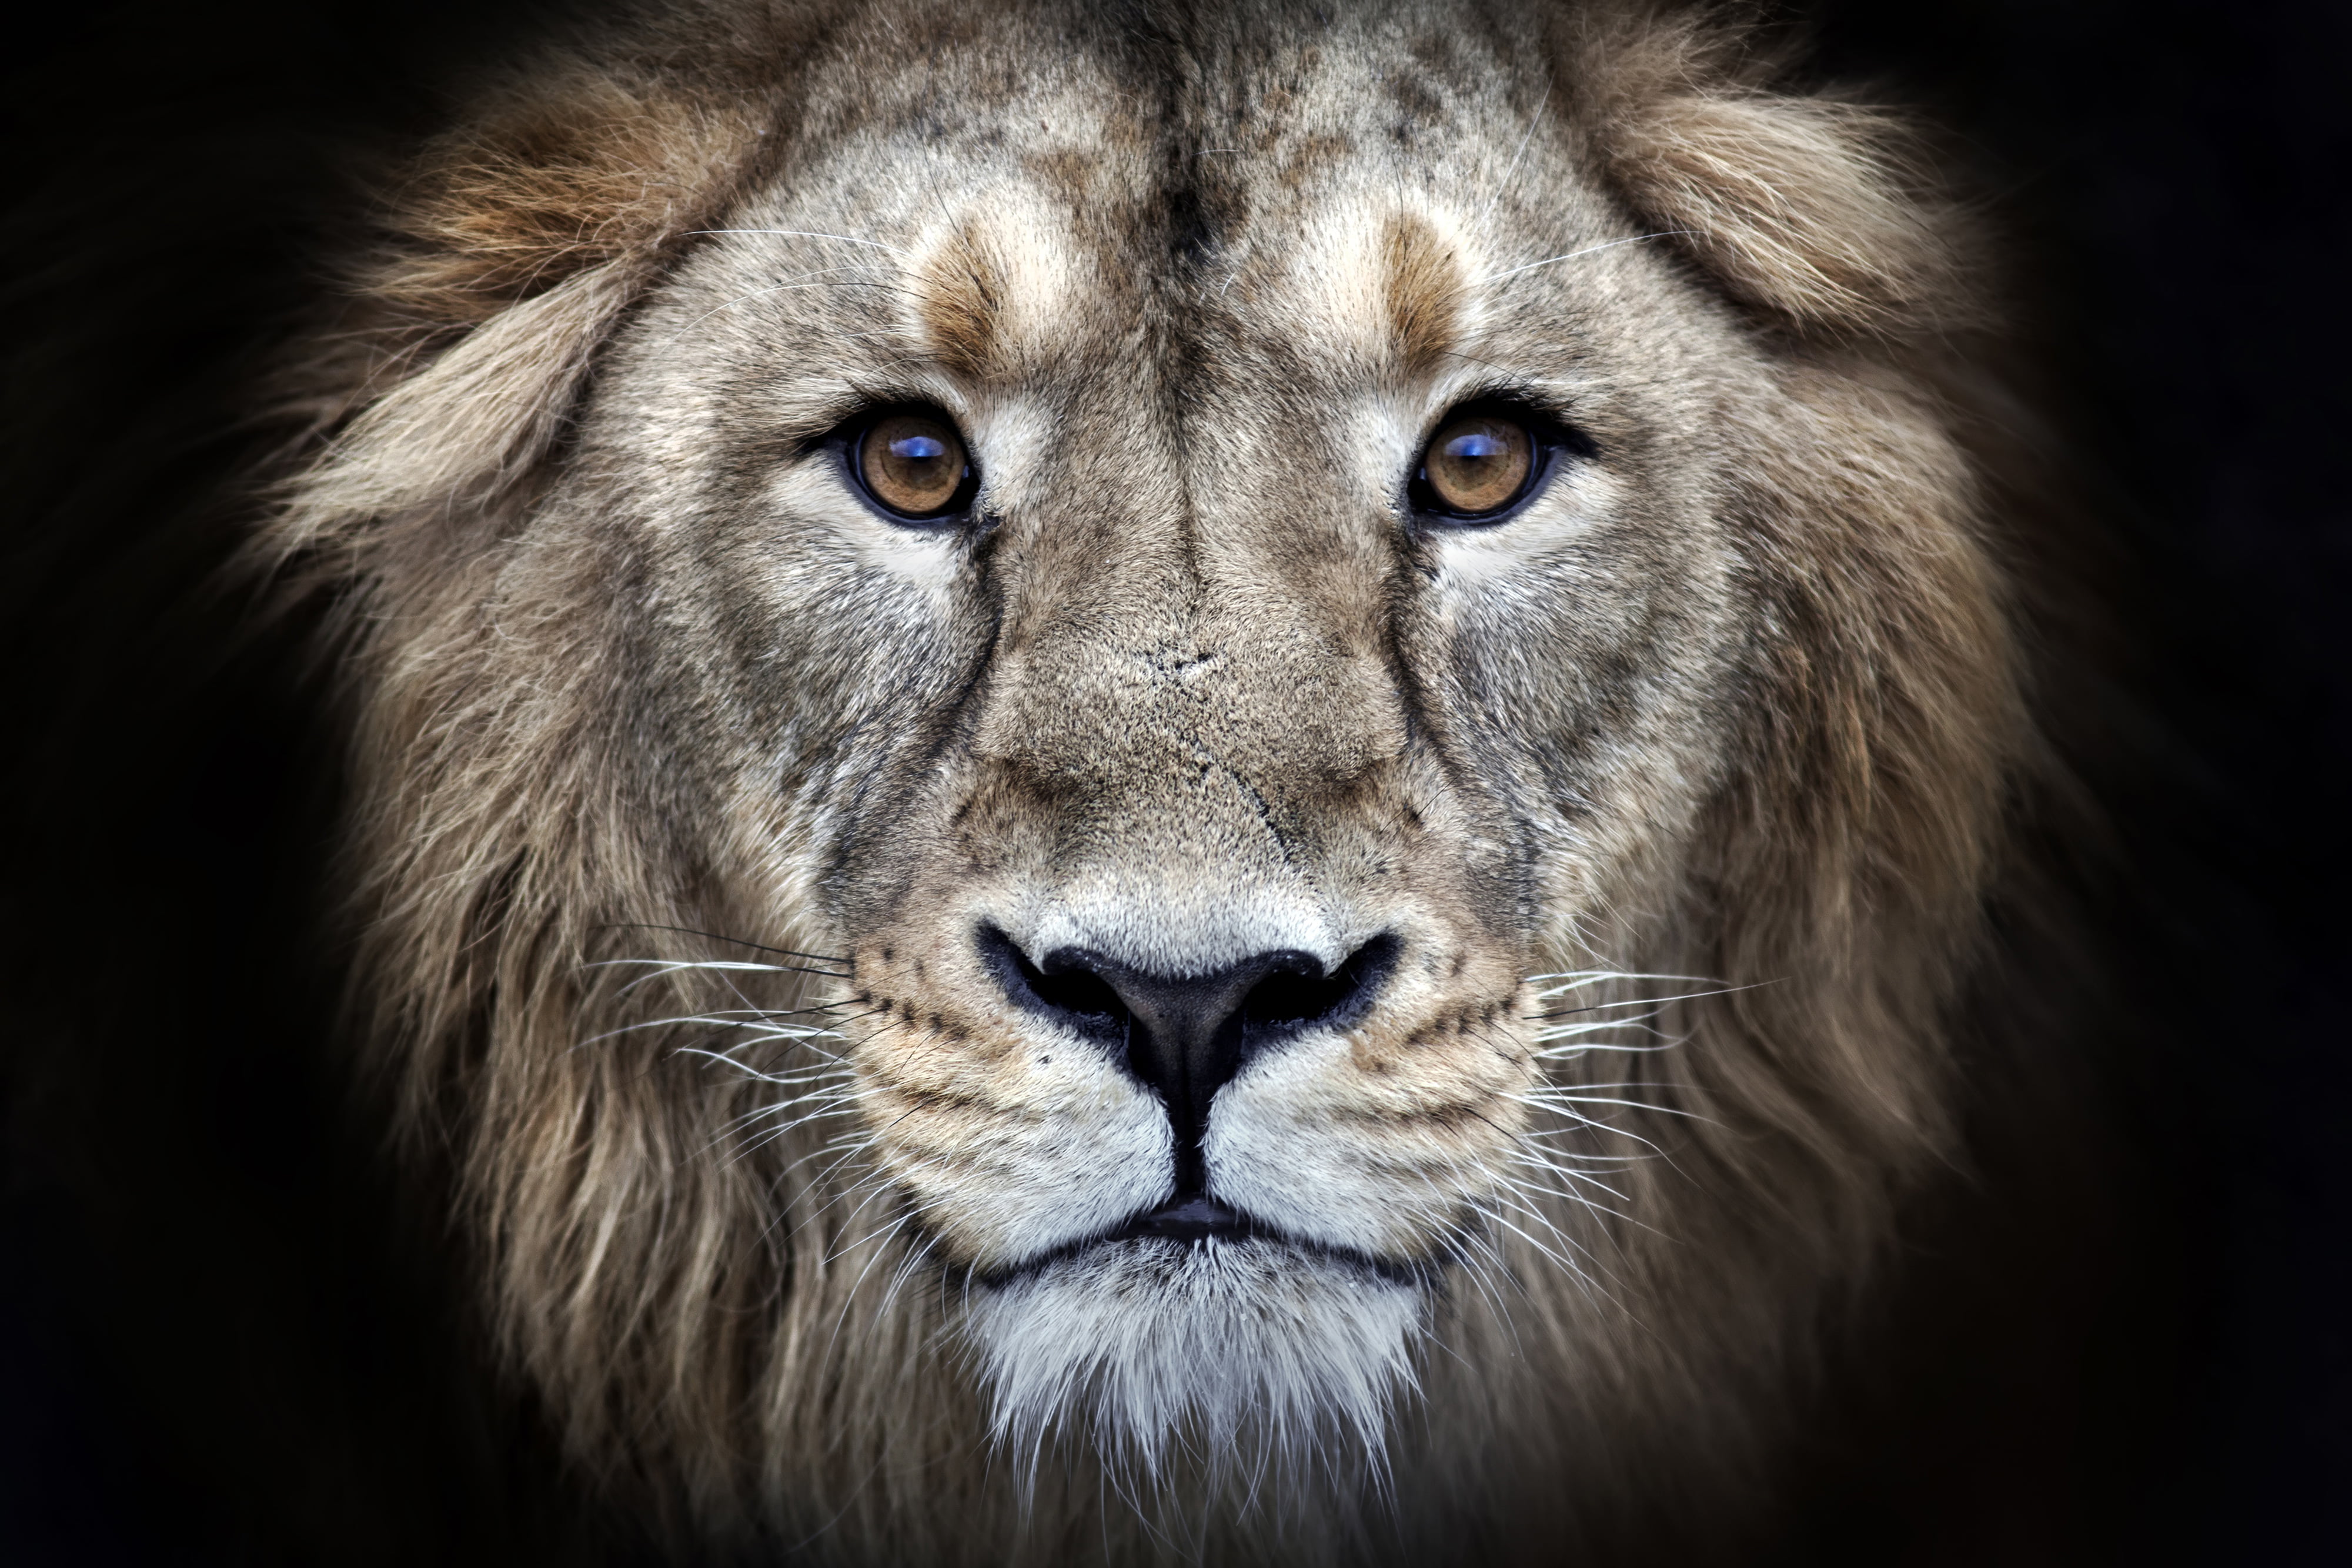 portrait photography of lion